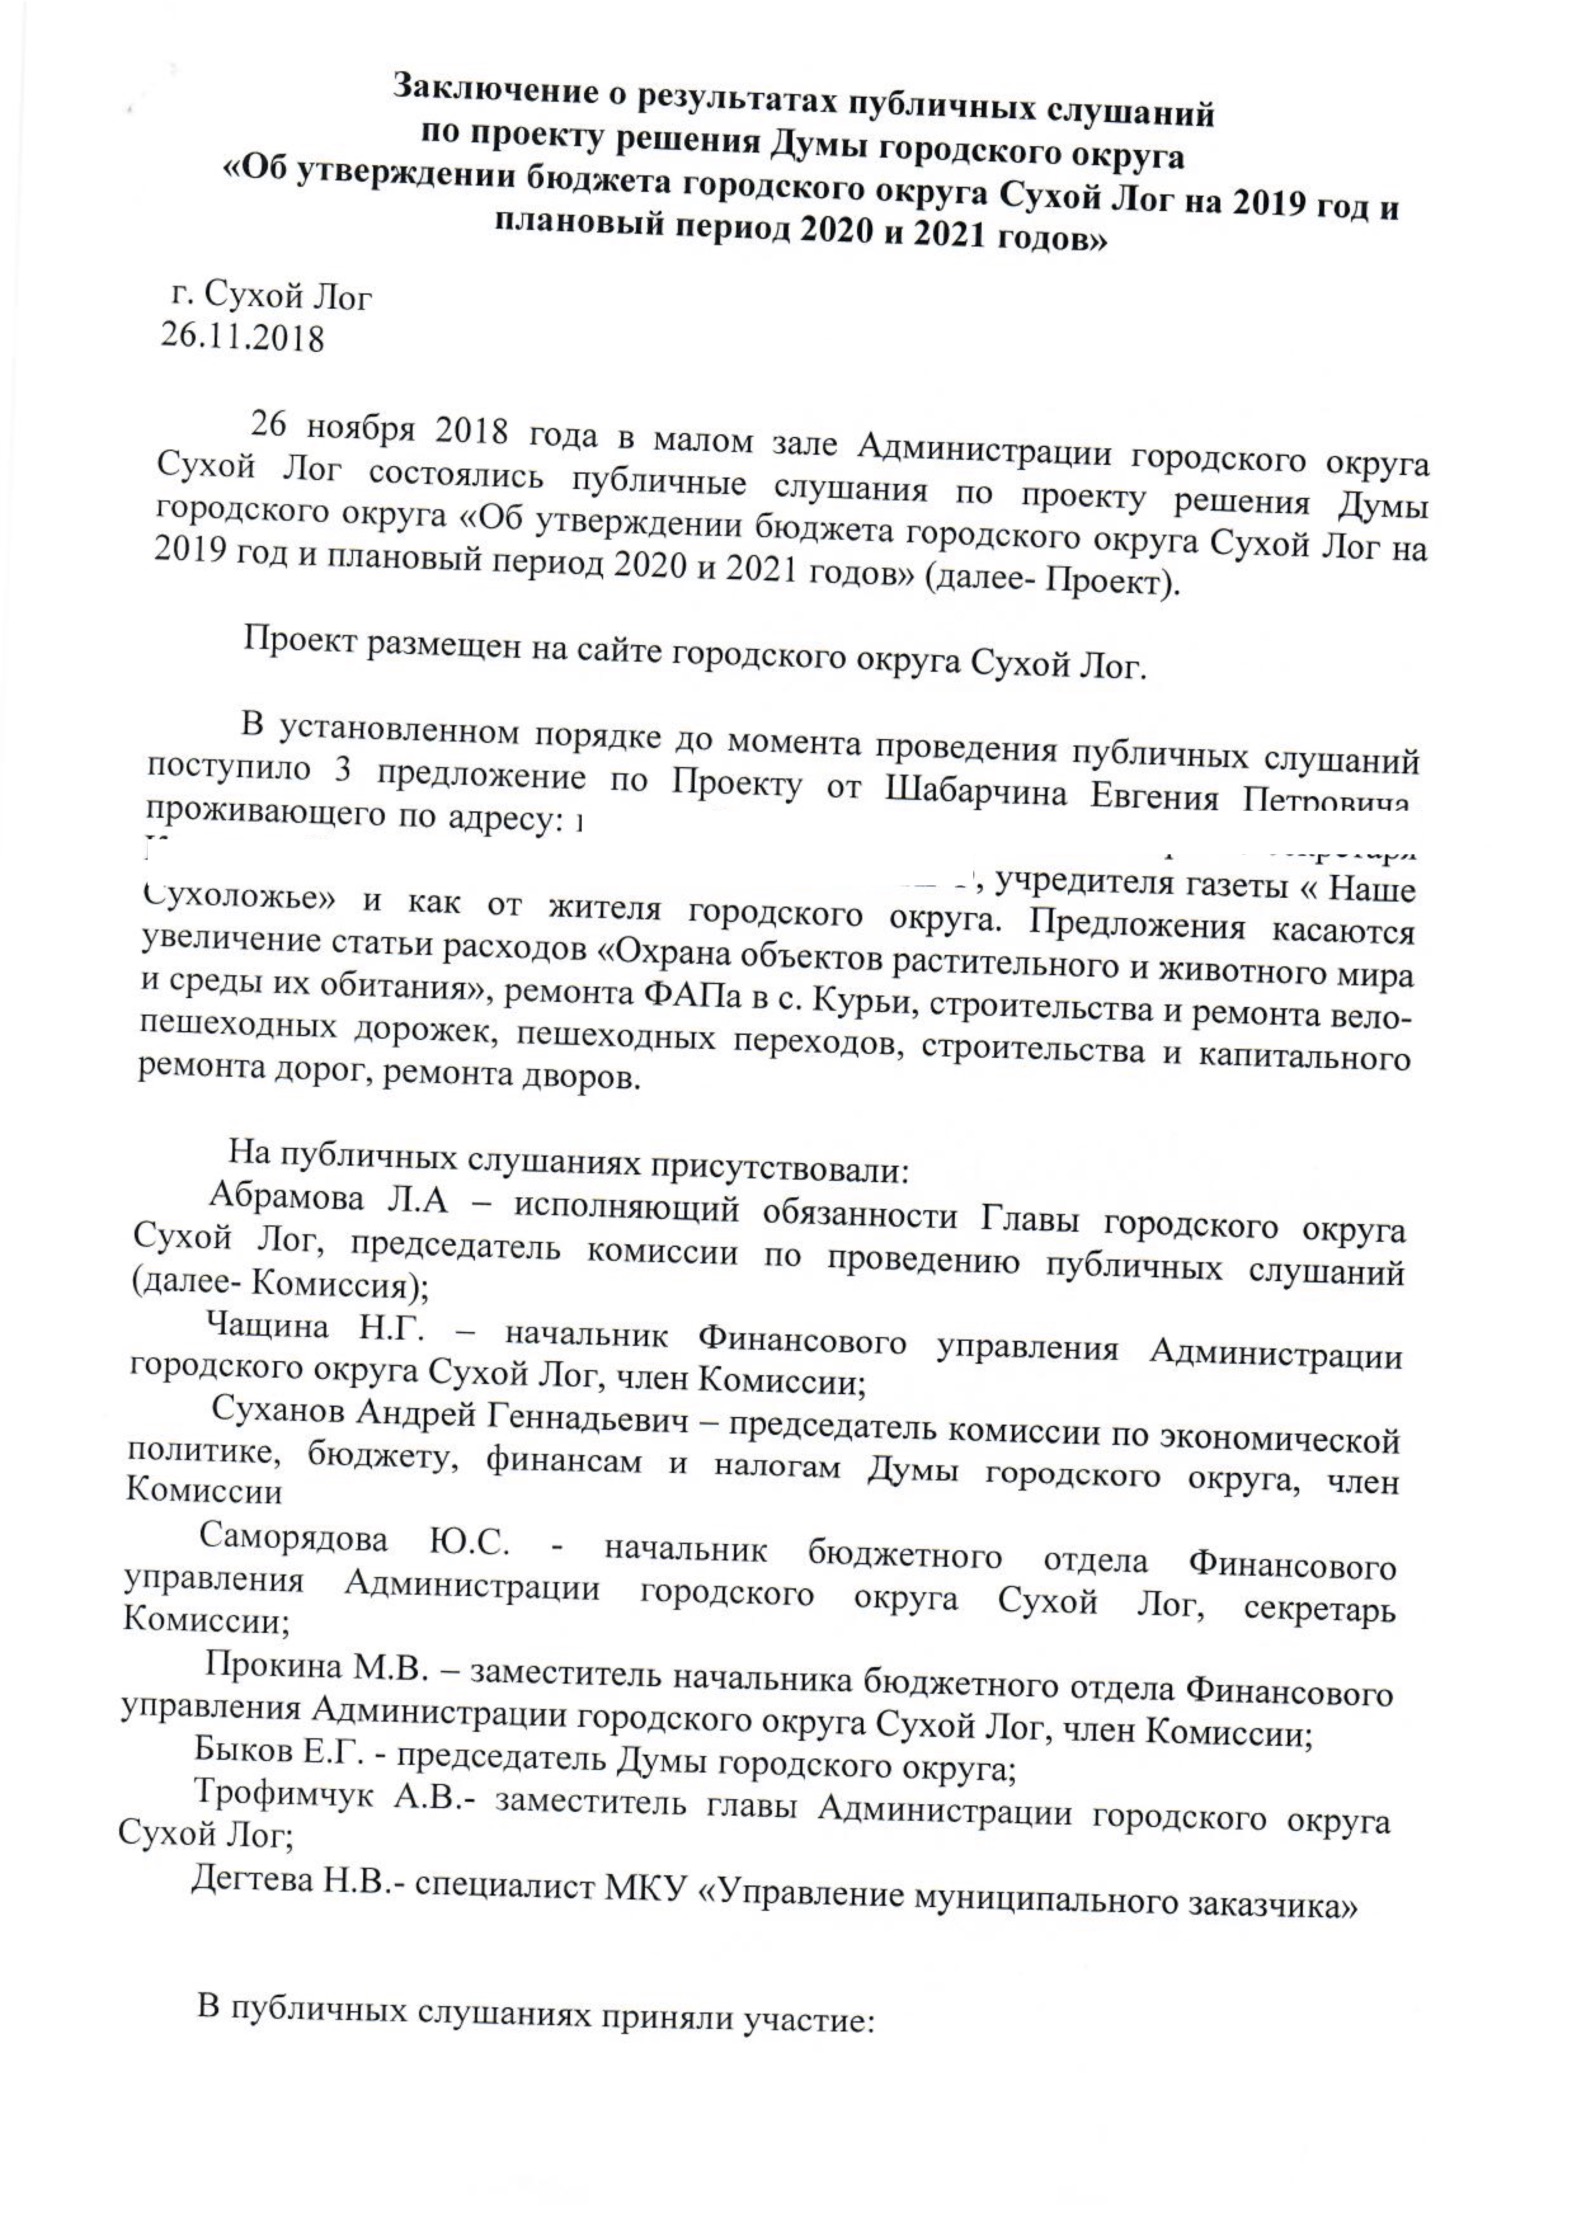 Zaklyuchenie-o-rezultatakh-publichnykh-slushaniy 03.11.2021 в 07.06.33 2